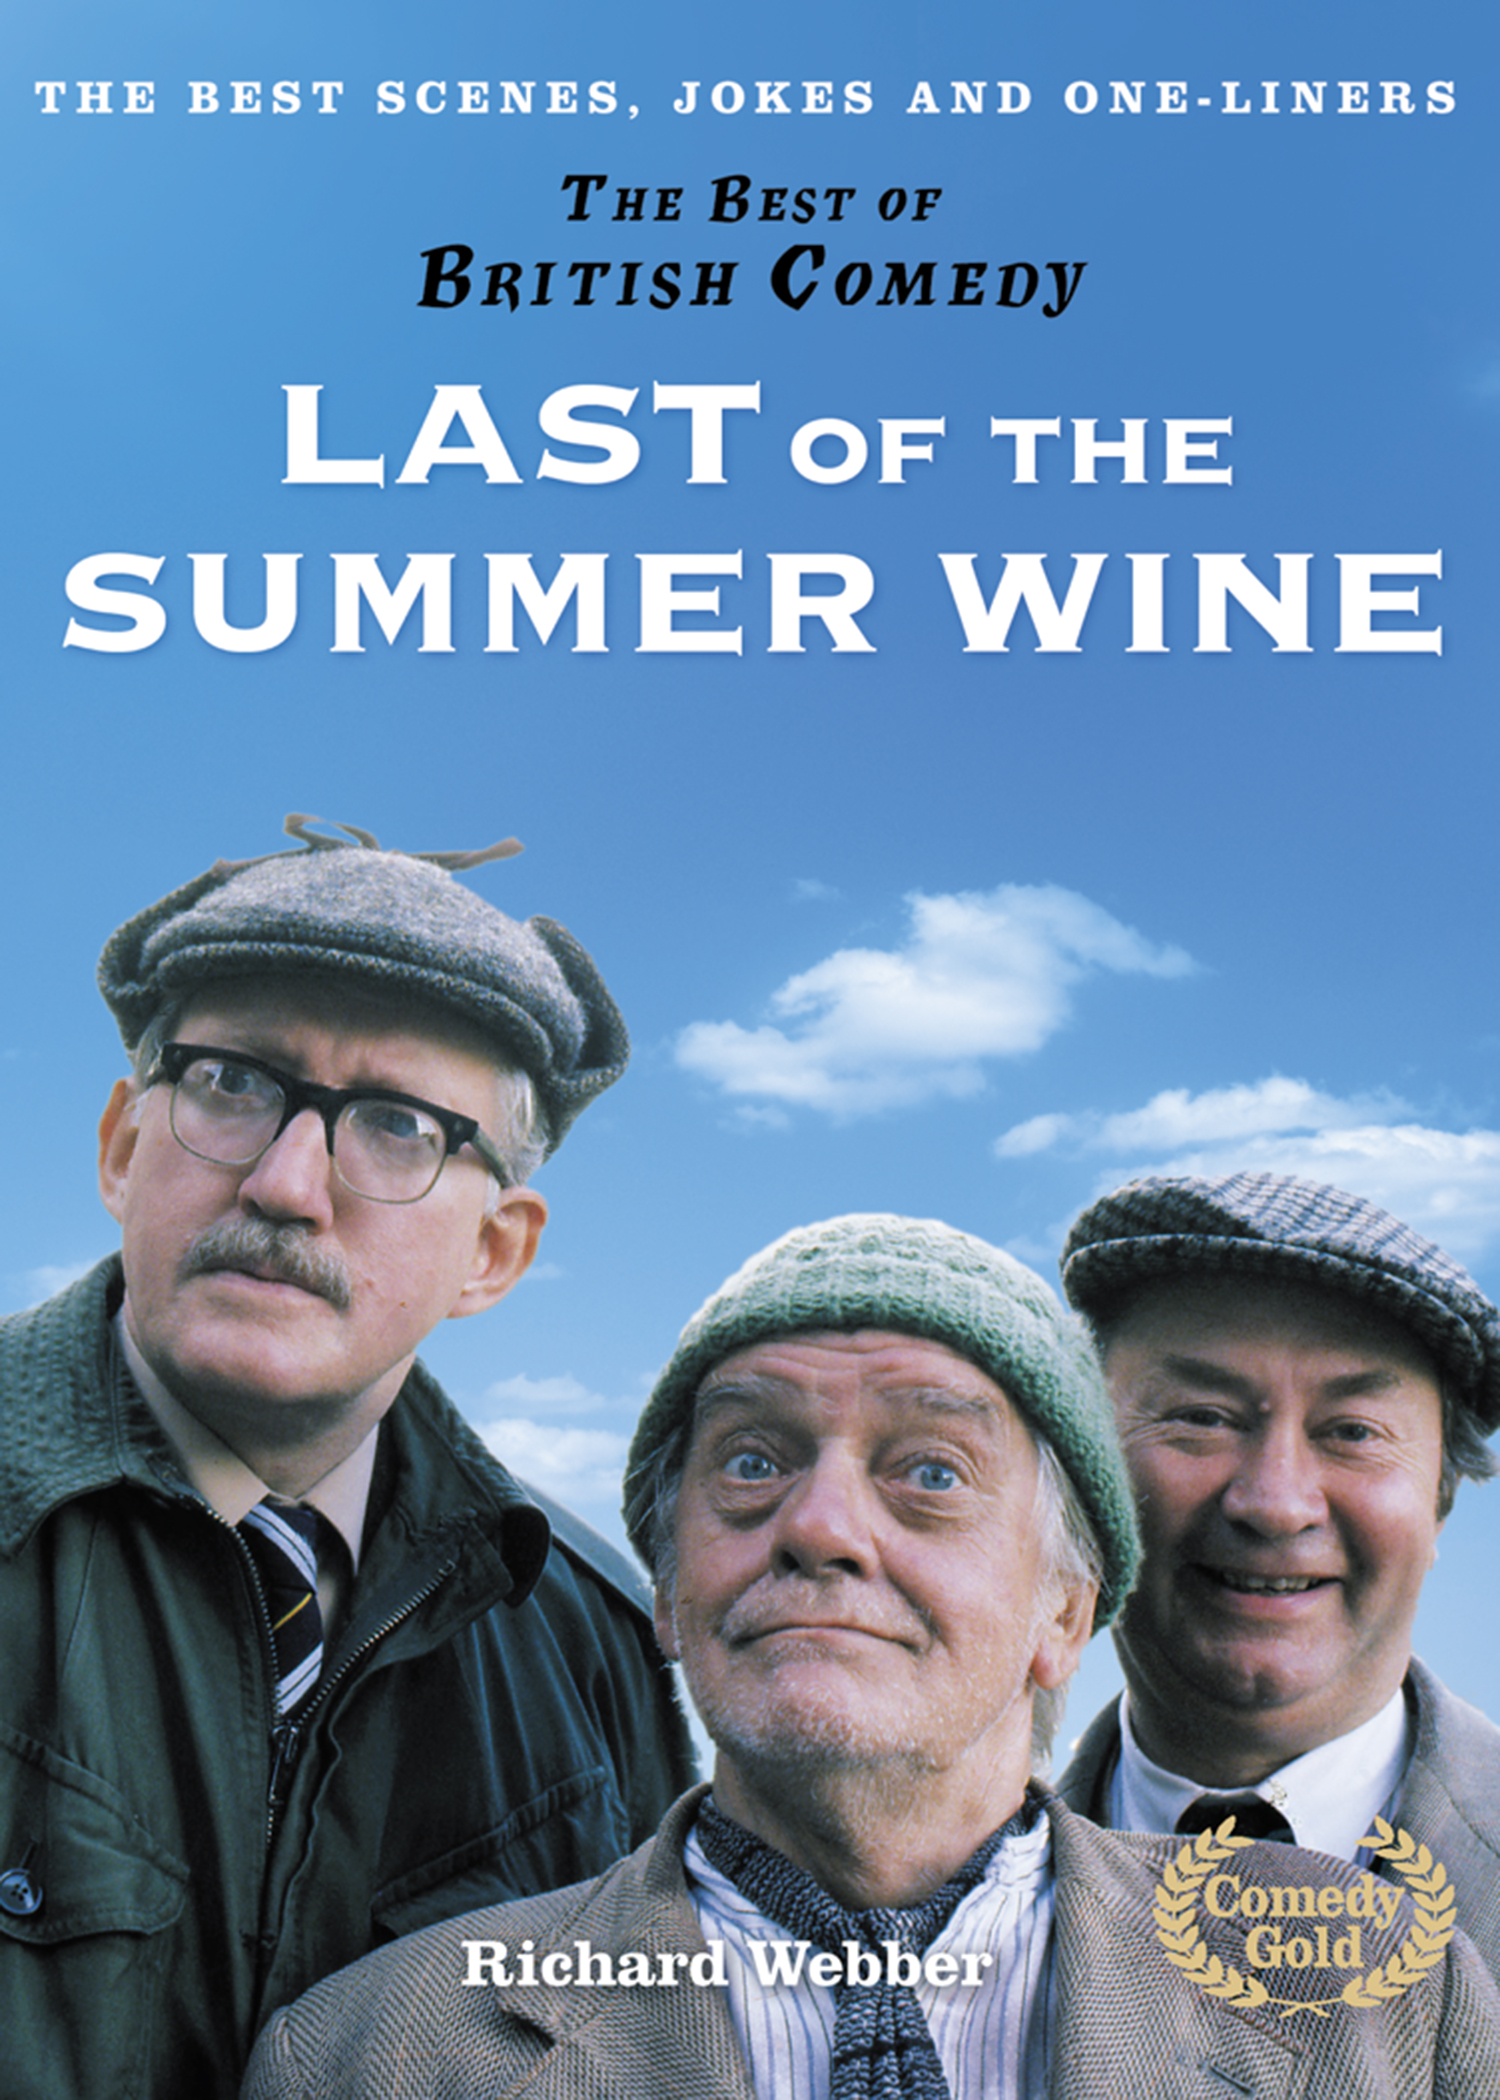 Summer jokes. Summer Wine. Best jokes. Завод Summer Wine.